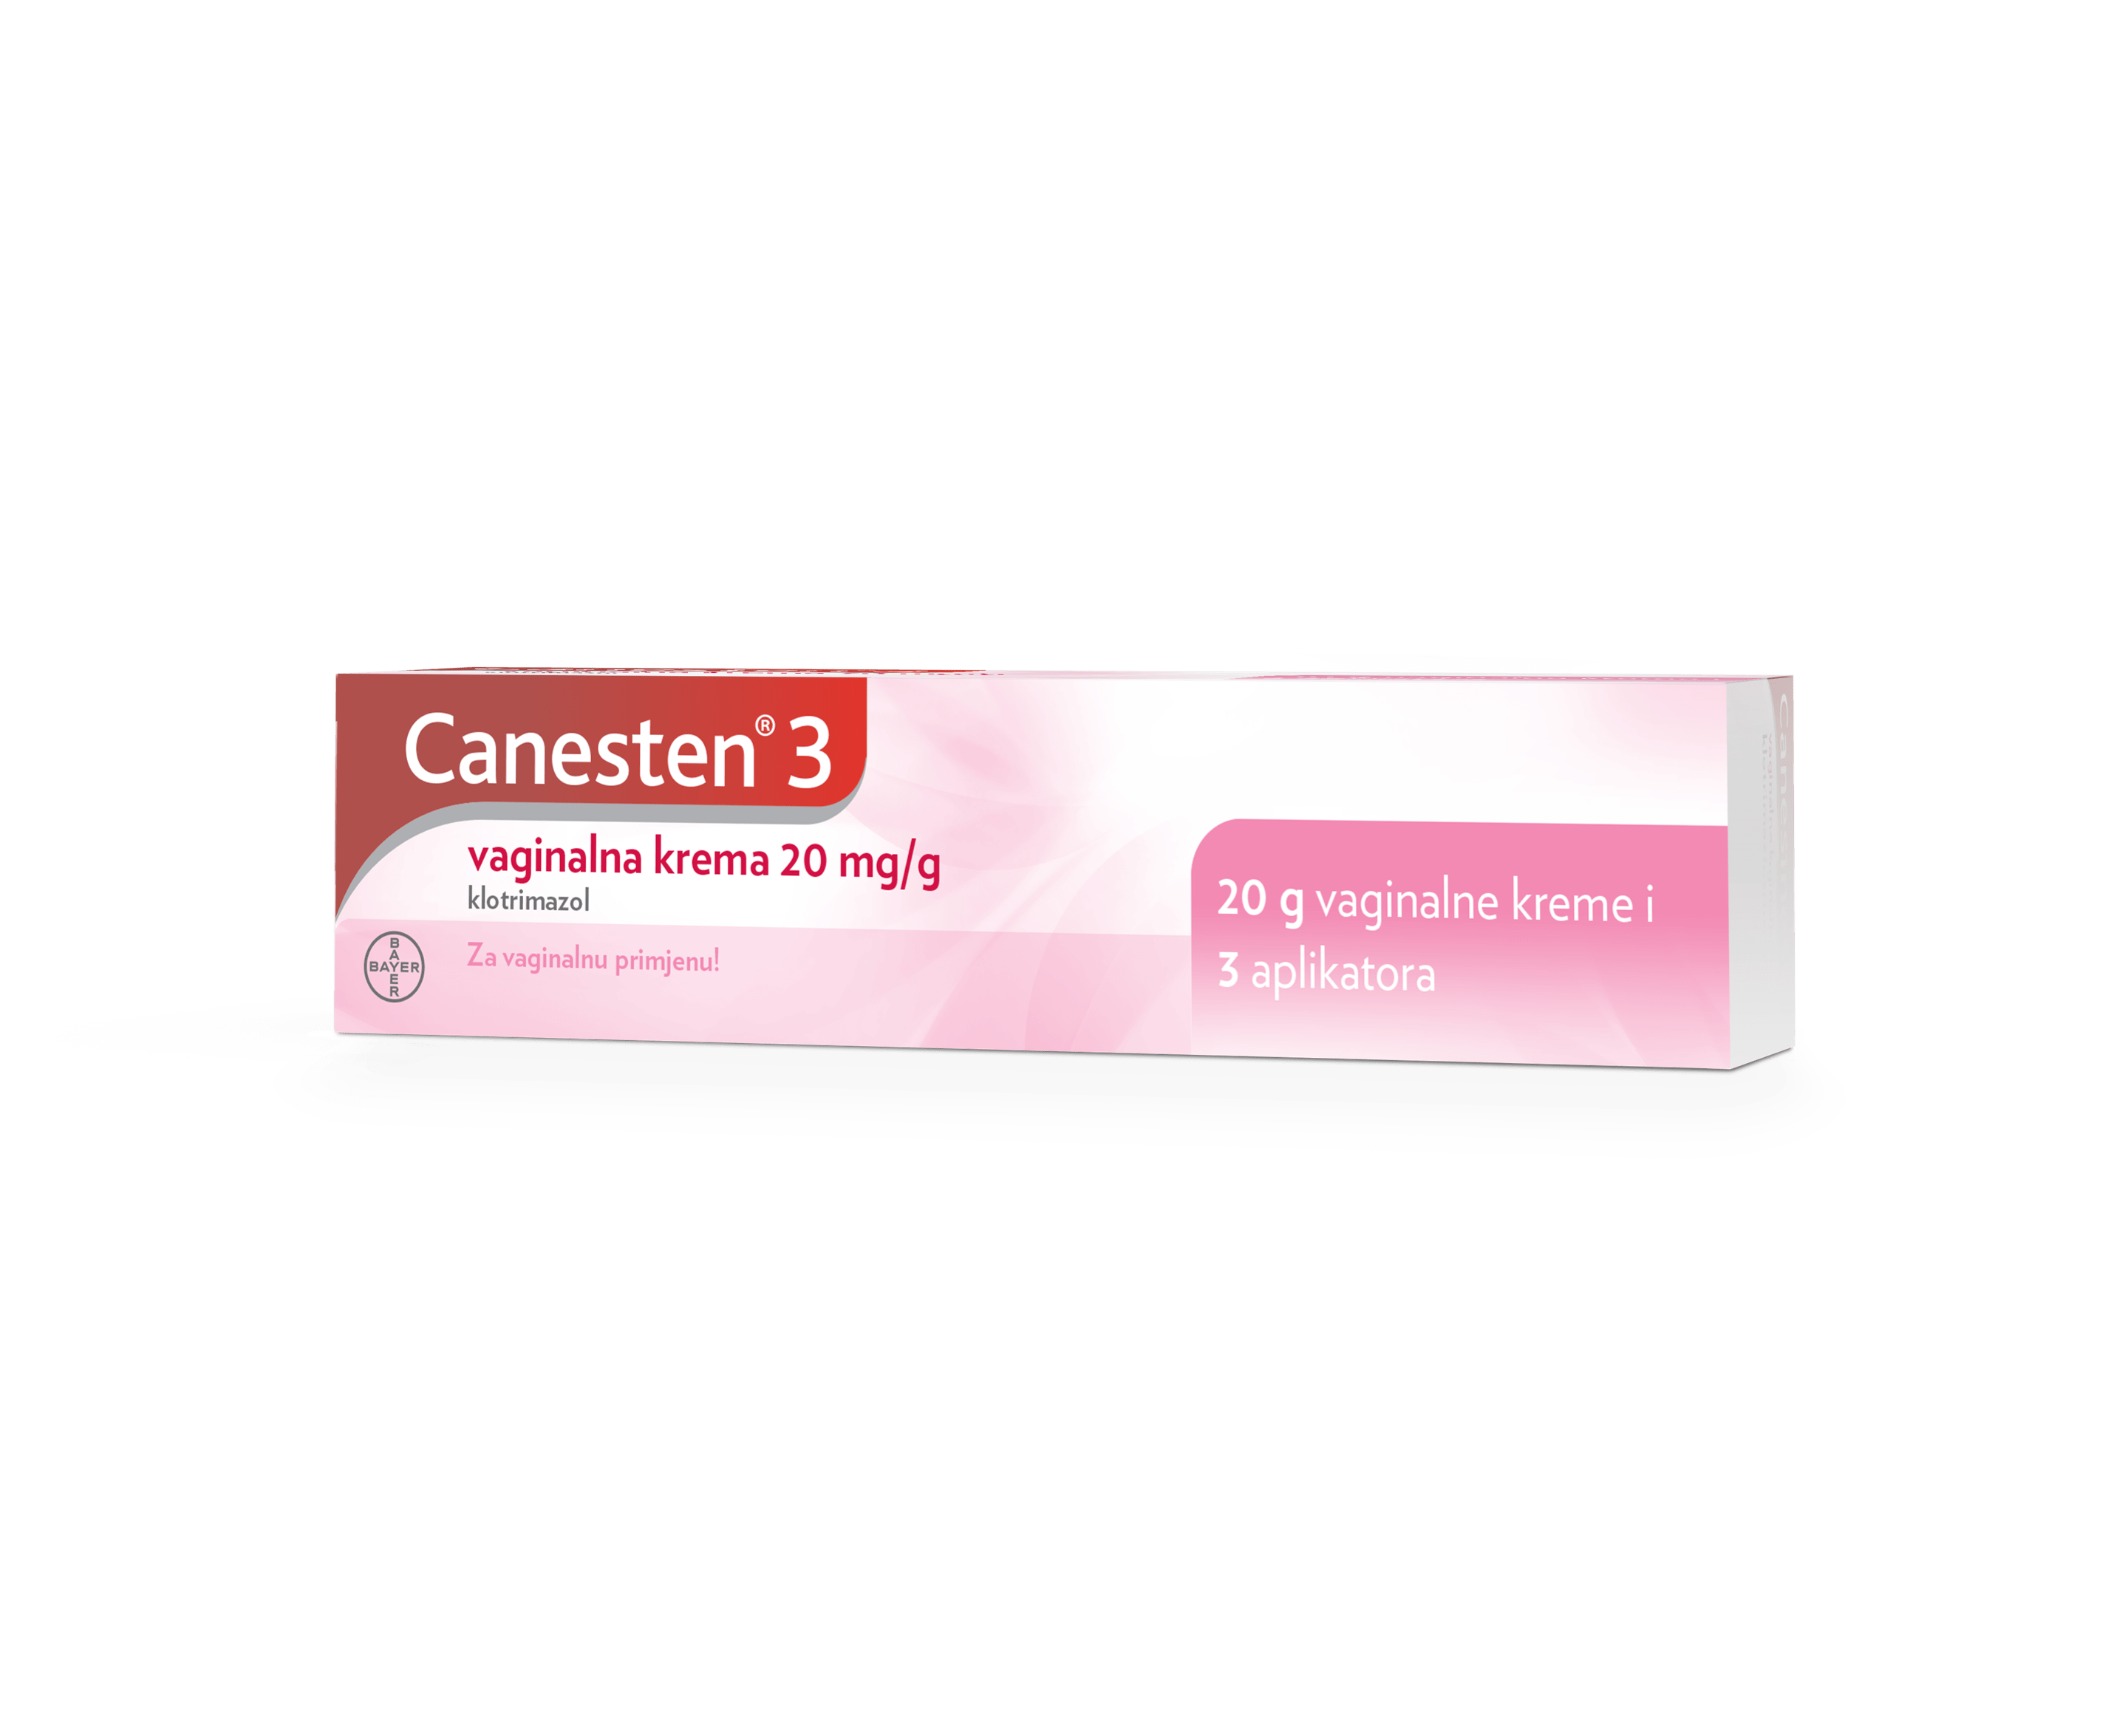 Canesten® 3 vaginalna krema 20 mg/g